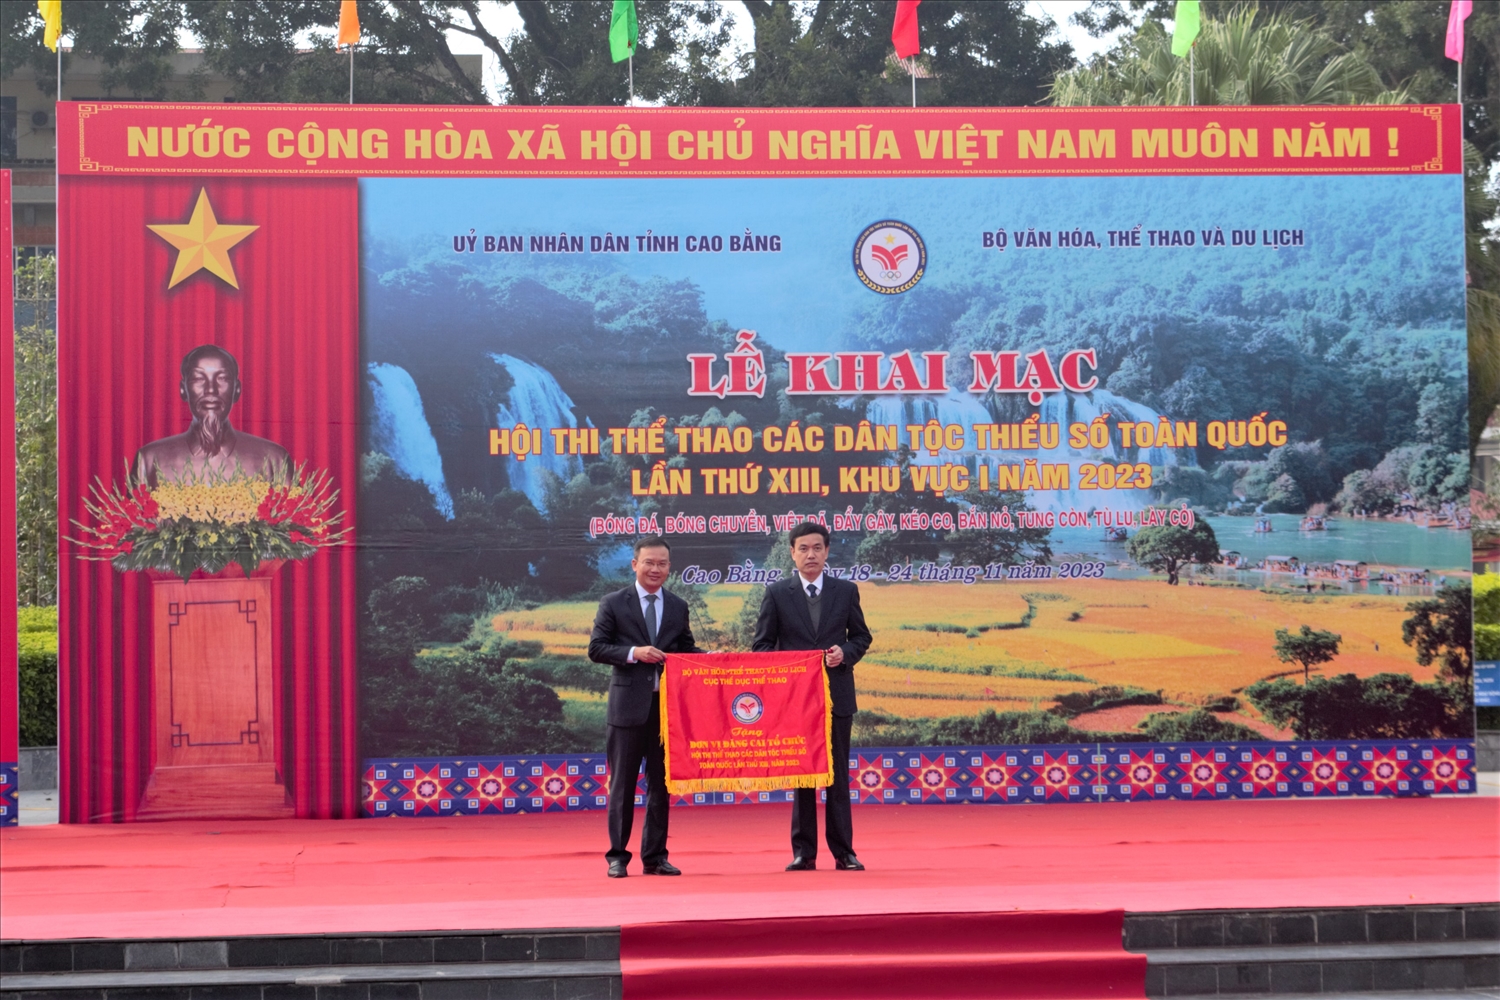 Phó Cục trưởng Cục Thể dục Thể thao (Bộ VHTT&DL) Nguyễn Hồng Minh tặng cờ lưu niệm cho đại diện tỉnh Cao Bằng